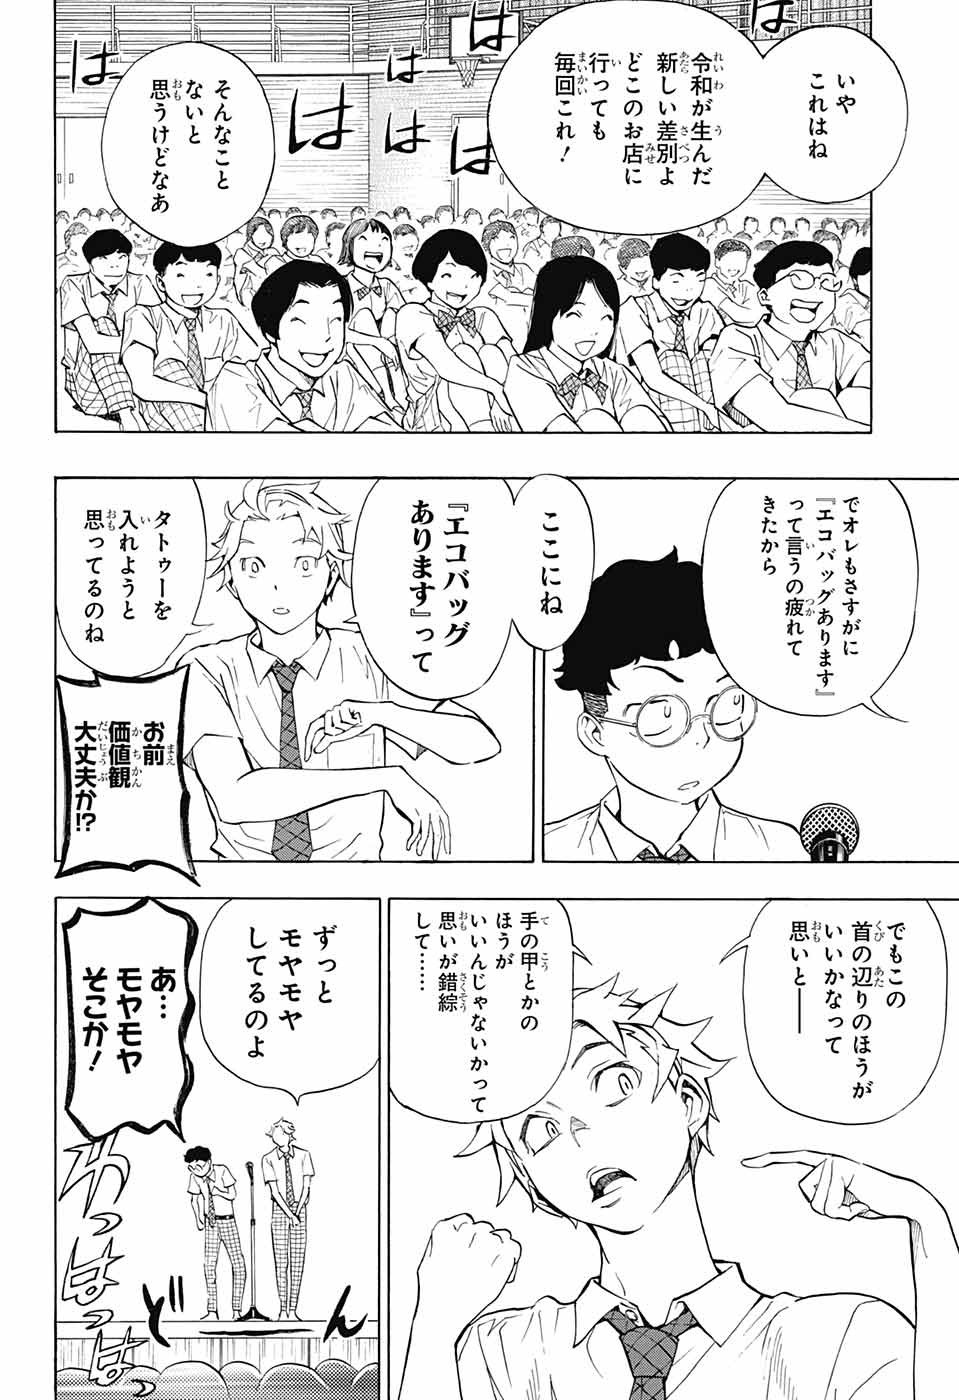 Sousei no Onmyouji - Chapter 104 - Page 2